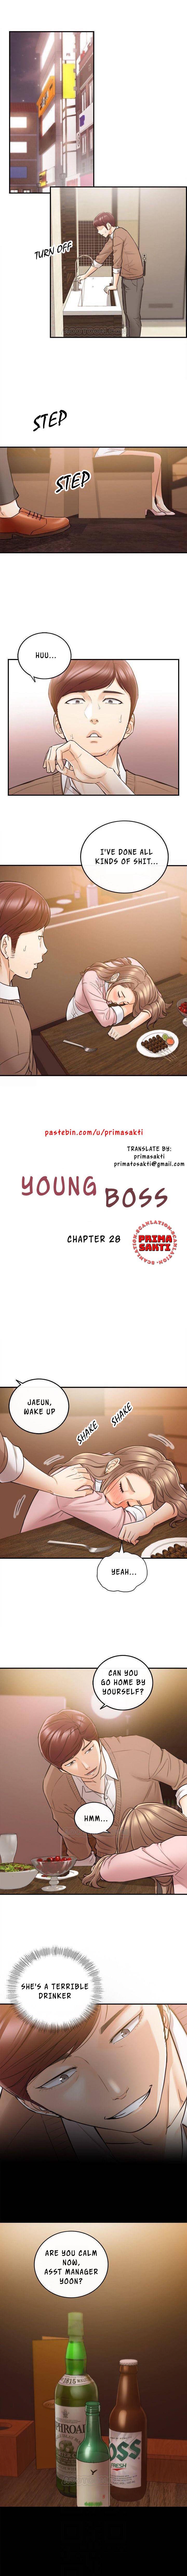 Young Boss Manhwa 01-73 223